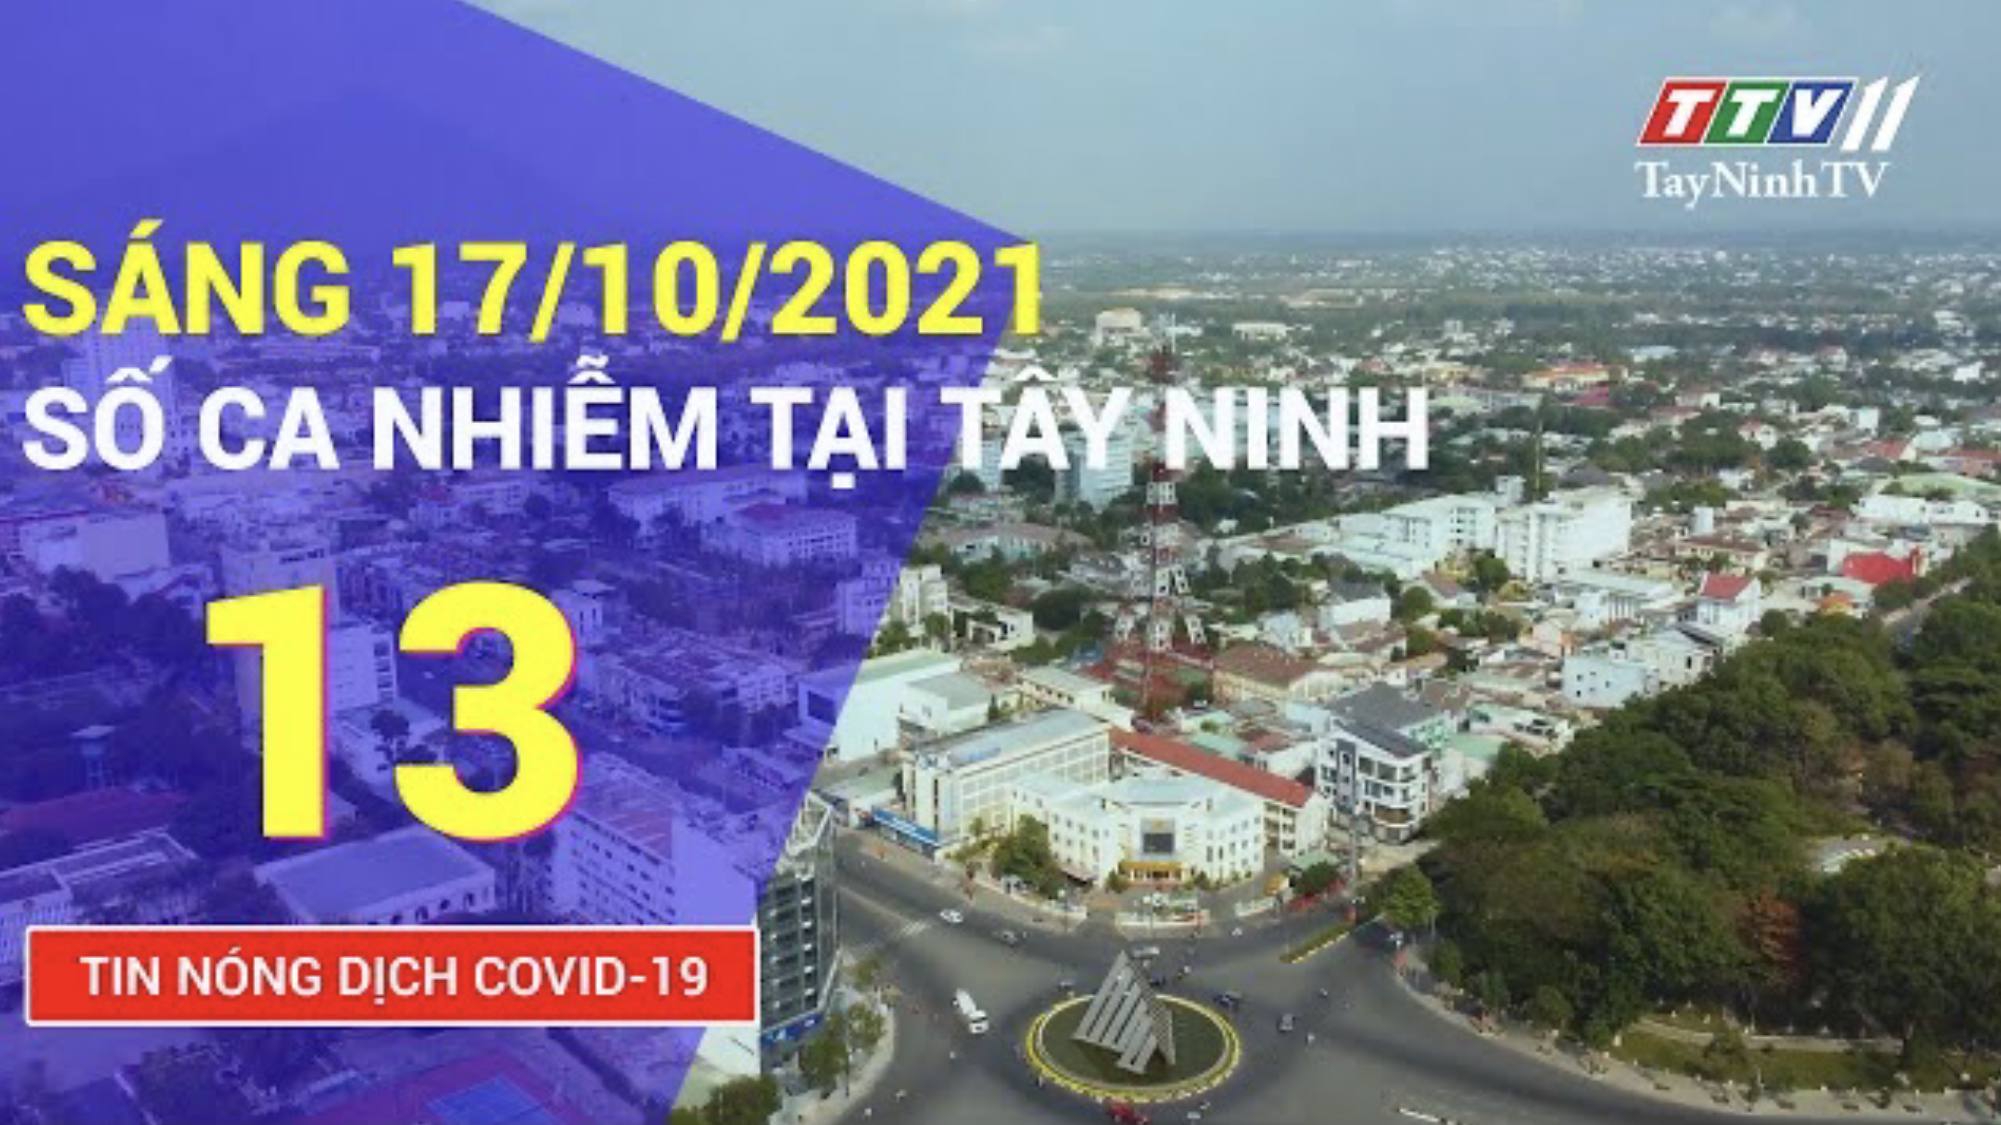 TIN TỨC COVID-19 TỐI 17/10/2021 | Tin tức hôm nay | TayNinhTV